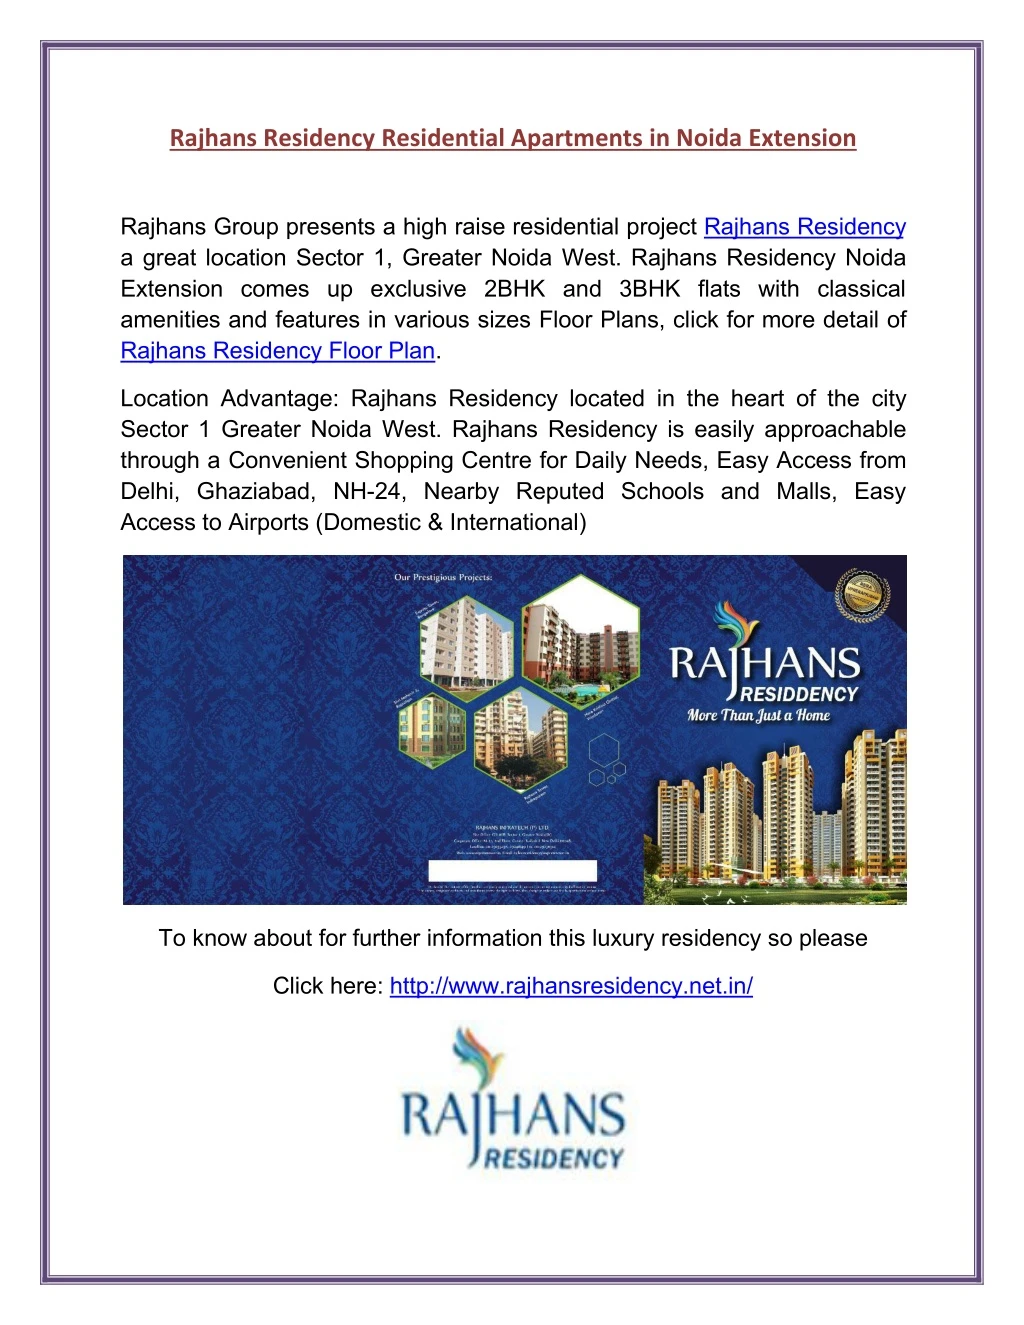 rajhans residency residential apartments in noida